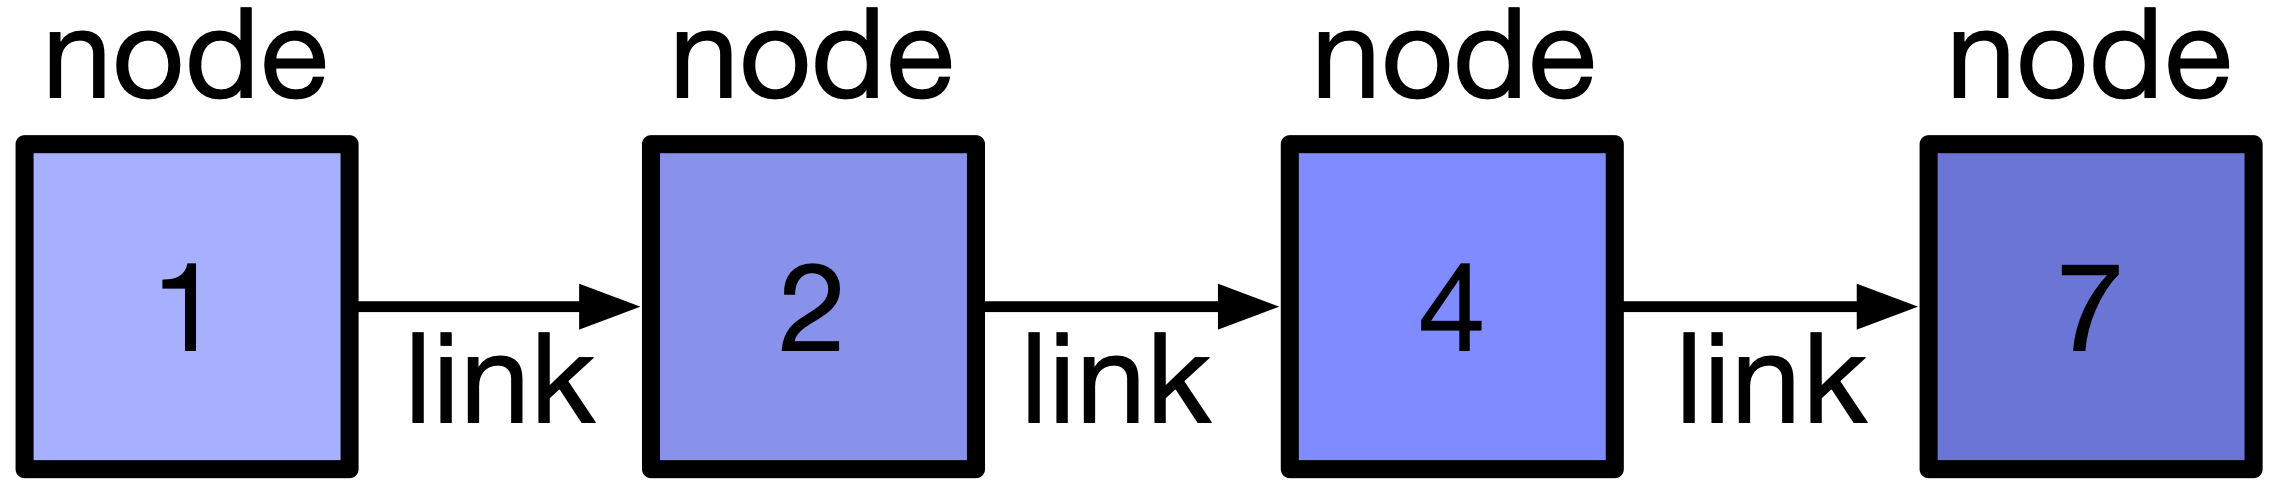 A linked list